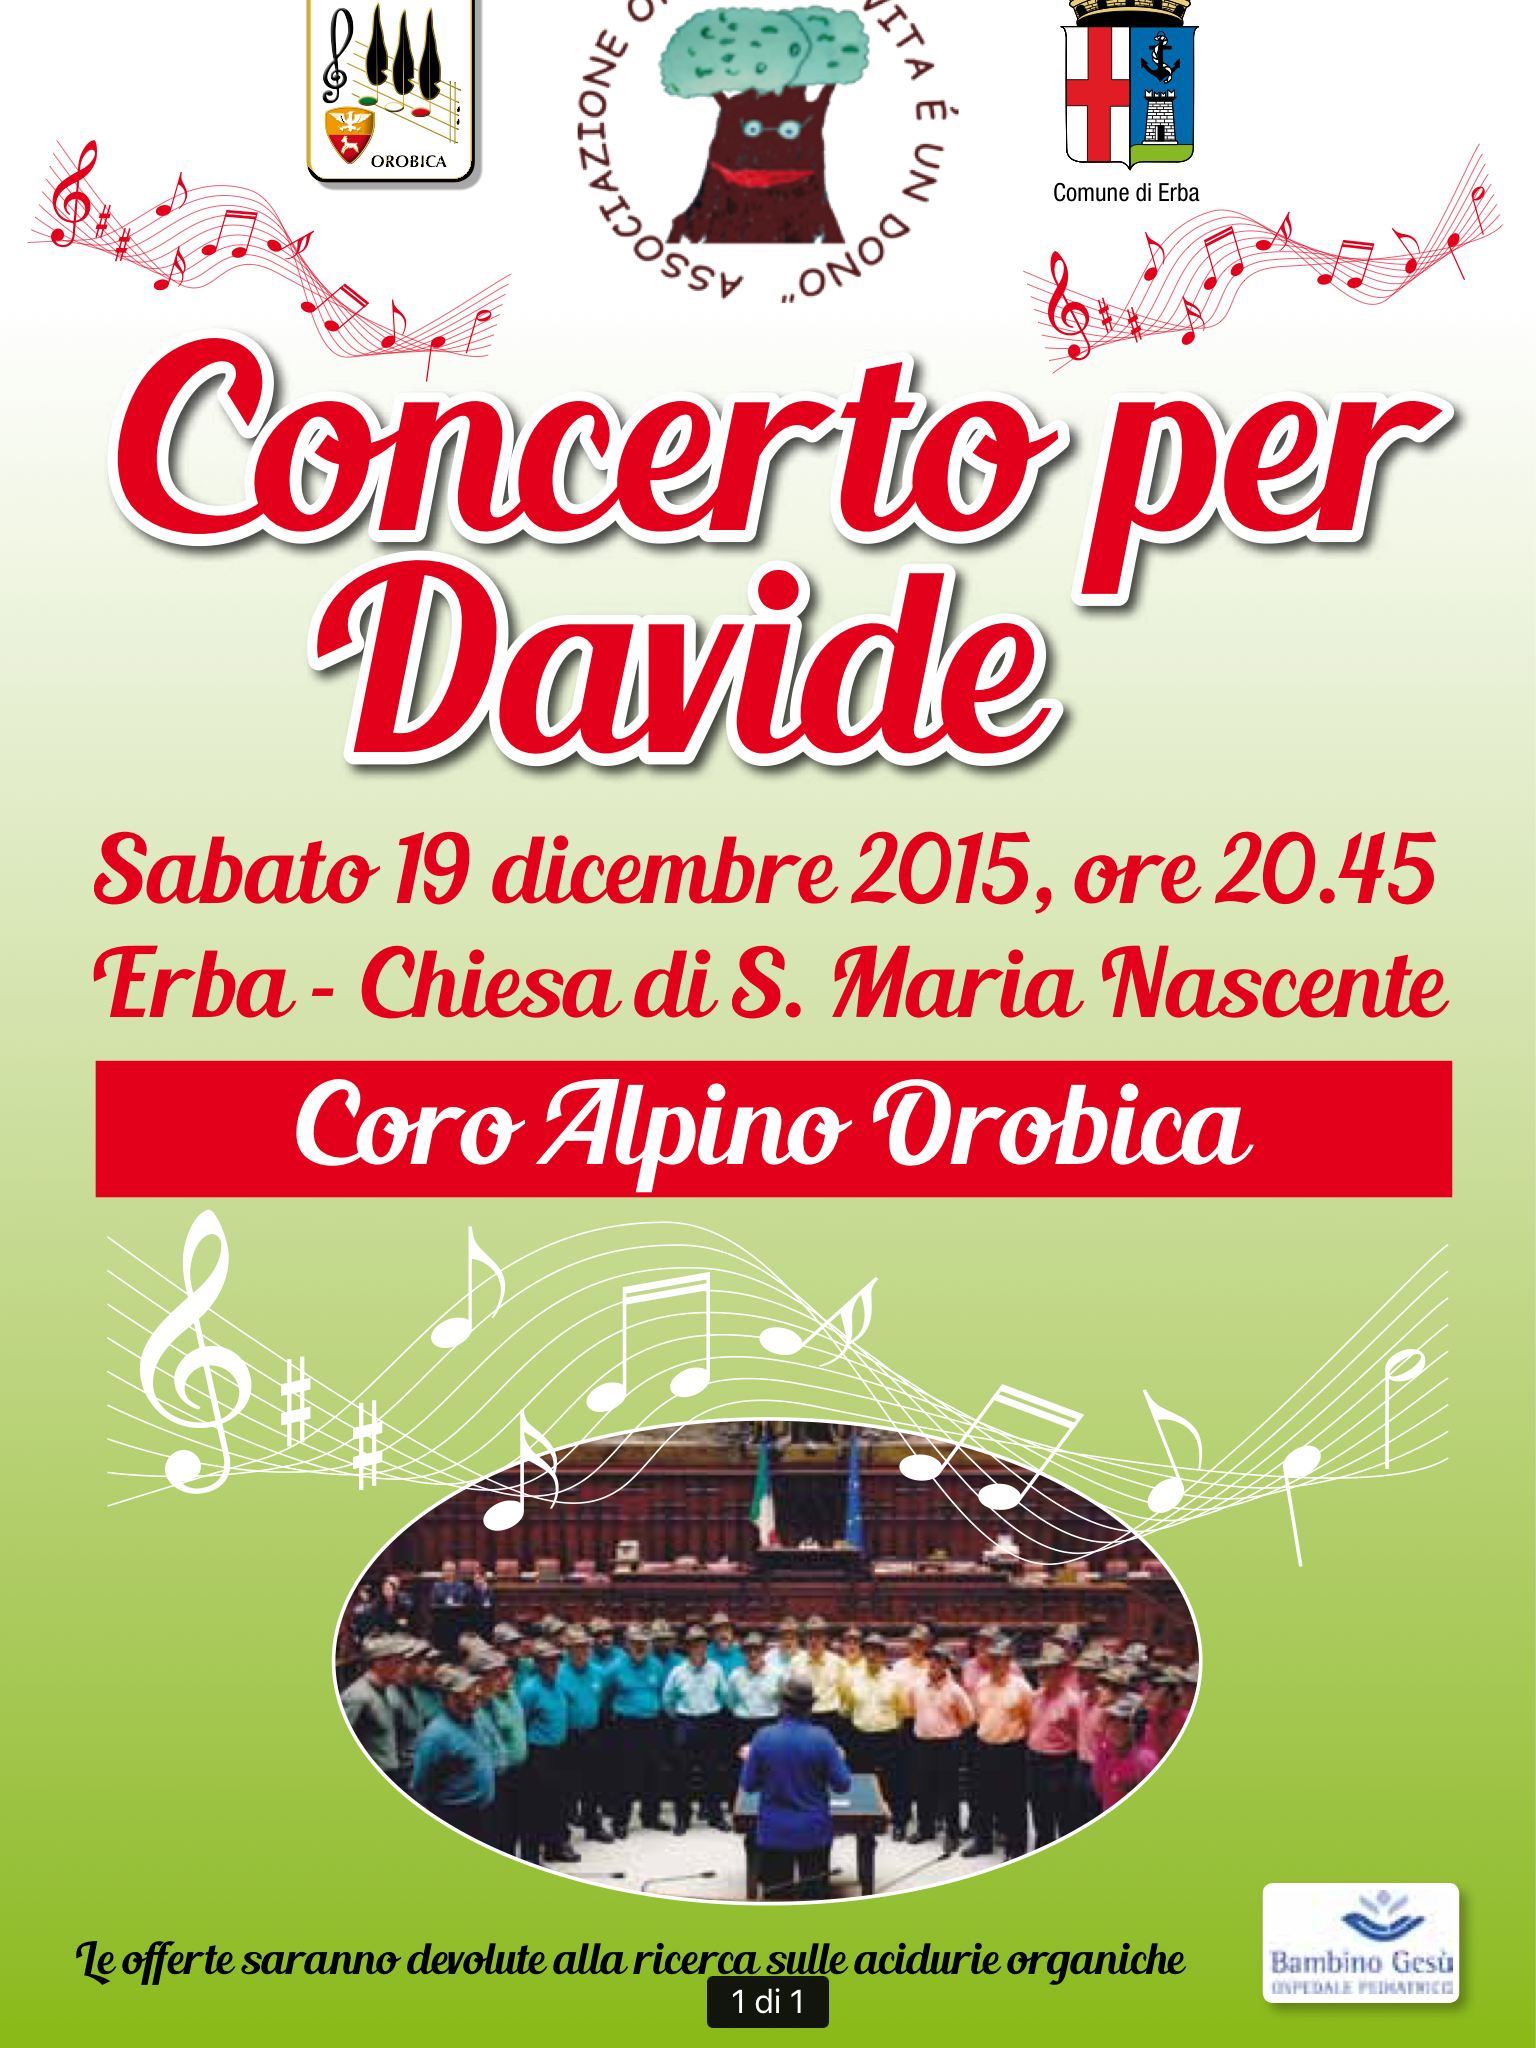 Concerto per Davide sabato 19 dicembre 2015